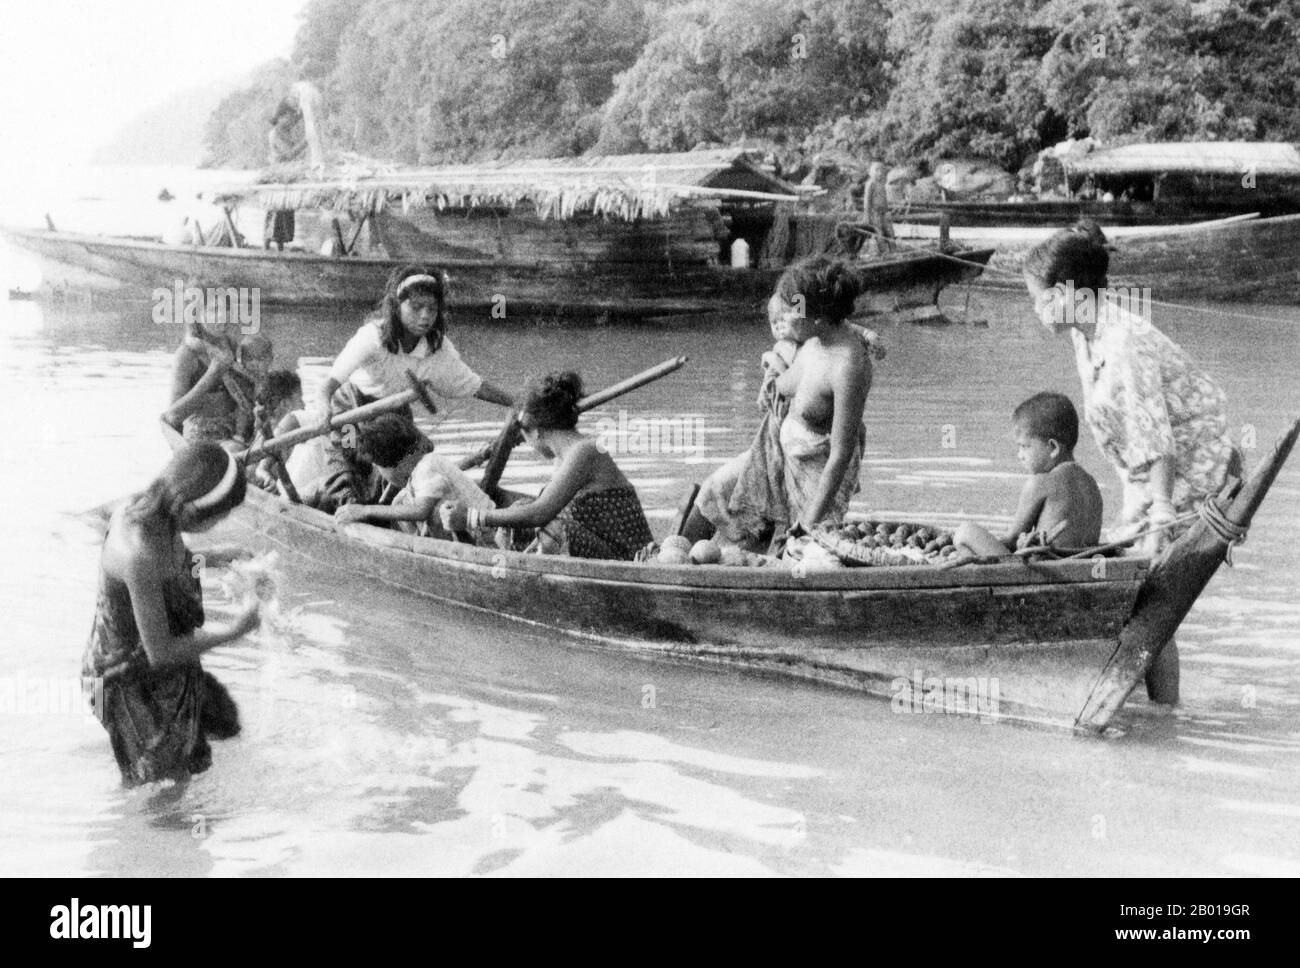 Thailand: Chao Thalae 'Sea Gipsy' Frauen und Kinder mit Booten, Phuket, c. 1960. Die ‘Sea Gypsies’ oder Moken der Andamanensee, im Thailändischen als chao thalae oder ‘People of the Sea’ bekannt, werden in drei Gruppen unterteilt. Sie leben zwischen 4.000 und 5.000 Jahren, sie leben nur an der Küste, entweder in Hütten am Ufer oder auf Booten, die die Küstengewässer vom Mergui-Archipel in Burma bis zu den Tarutao-Inseln im Süden Thailands ausfahren. Die größte Sea Gipsy Gruppe sind die Urak Lawoi, die rund 3.000 zählt. Sie leben in einfachen Hütten an Stränden, die sich südlich von Phuket bis zu den Tarutao-Inseln erstrecken. Stockfoto